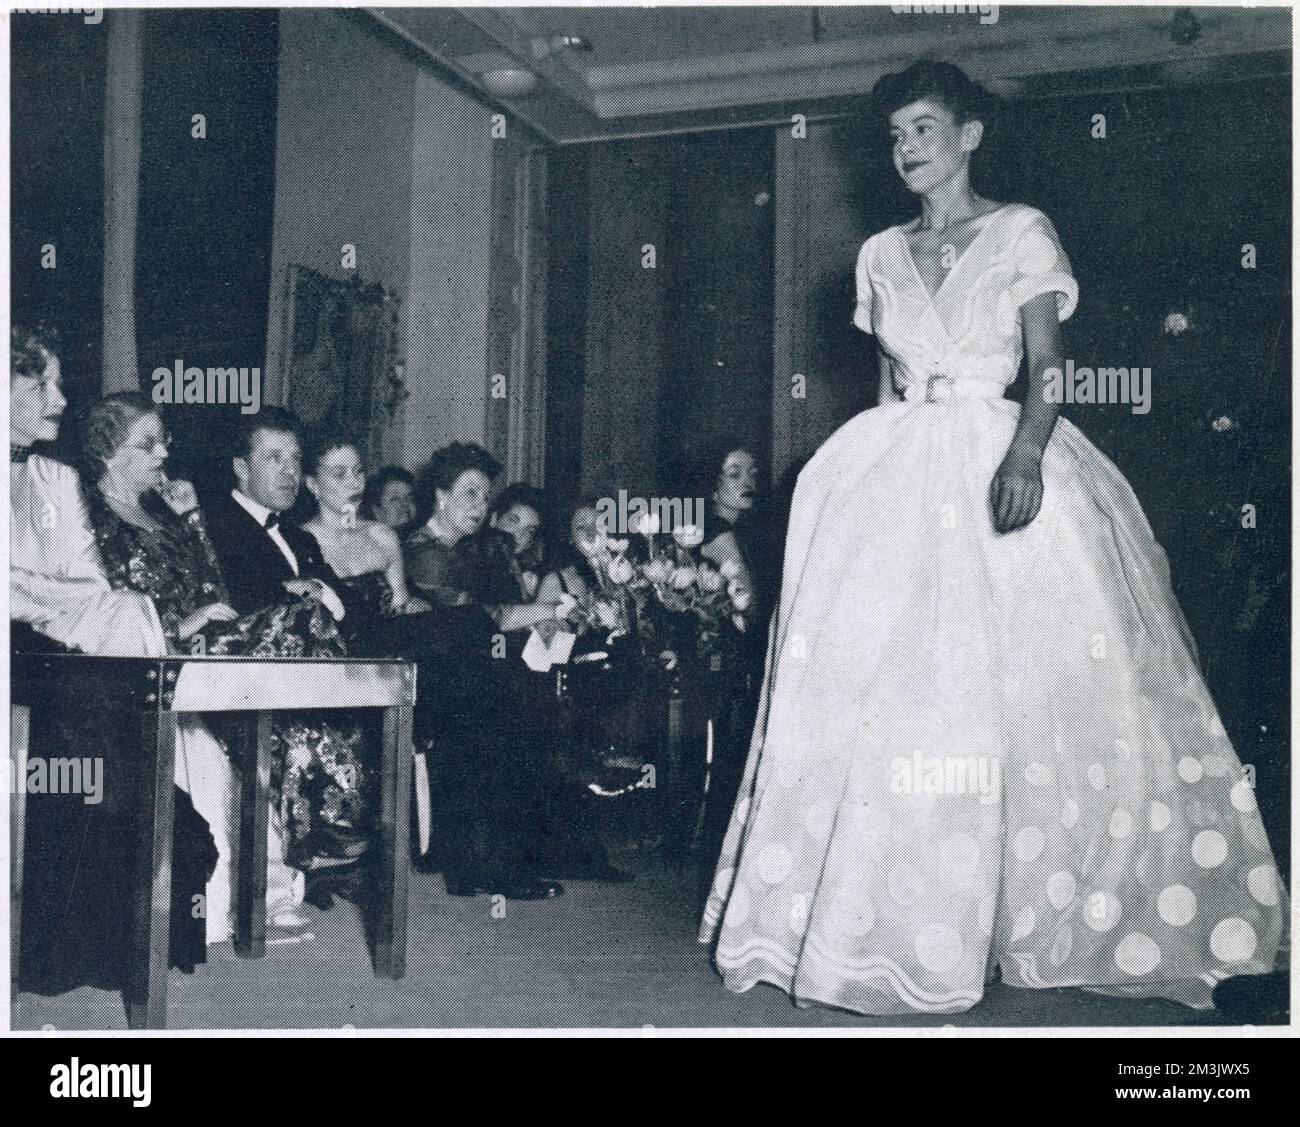 Robe de soirée blanche en organdie avec grands pois blancs. La taille mince a été accentuée par la plénitude de la jupe. En 1947, Christian Dior a créé une collection sensationnelle intitulée « New look ». Ses motifs étaient centrés autour des robes avec une taille de 18 pouces, qui a concentré l'attention sur la poitrine et les hanches. Madame Maggy Besancon de Wagner, comme beaucoup de designers, s'est inspirée de la collection de Dior. Son défilé de mode du printemps 1948 a suivi le style de 18 pouces à la taille et aux hanches. Banque D'Images